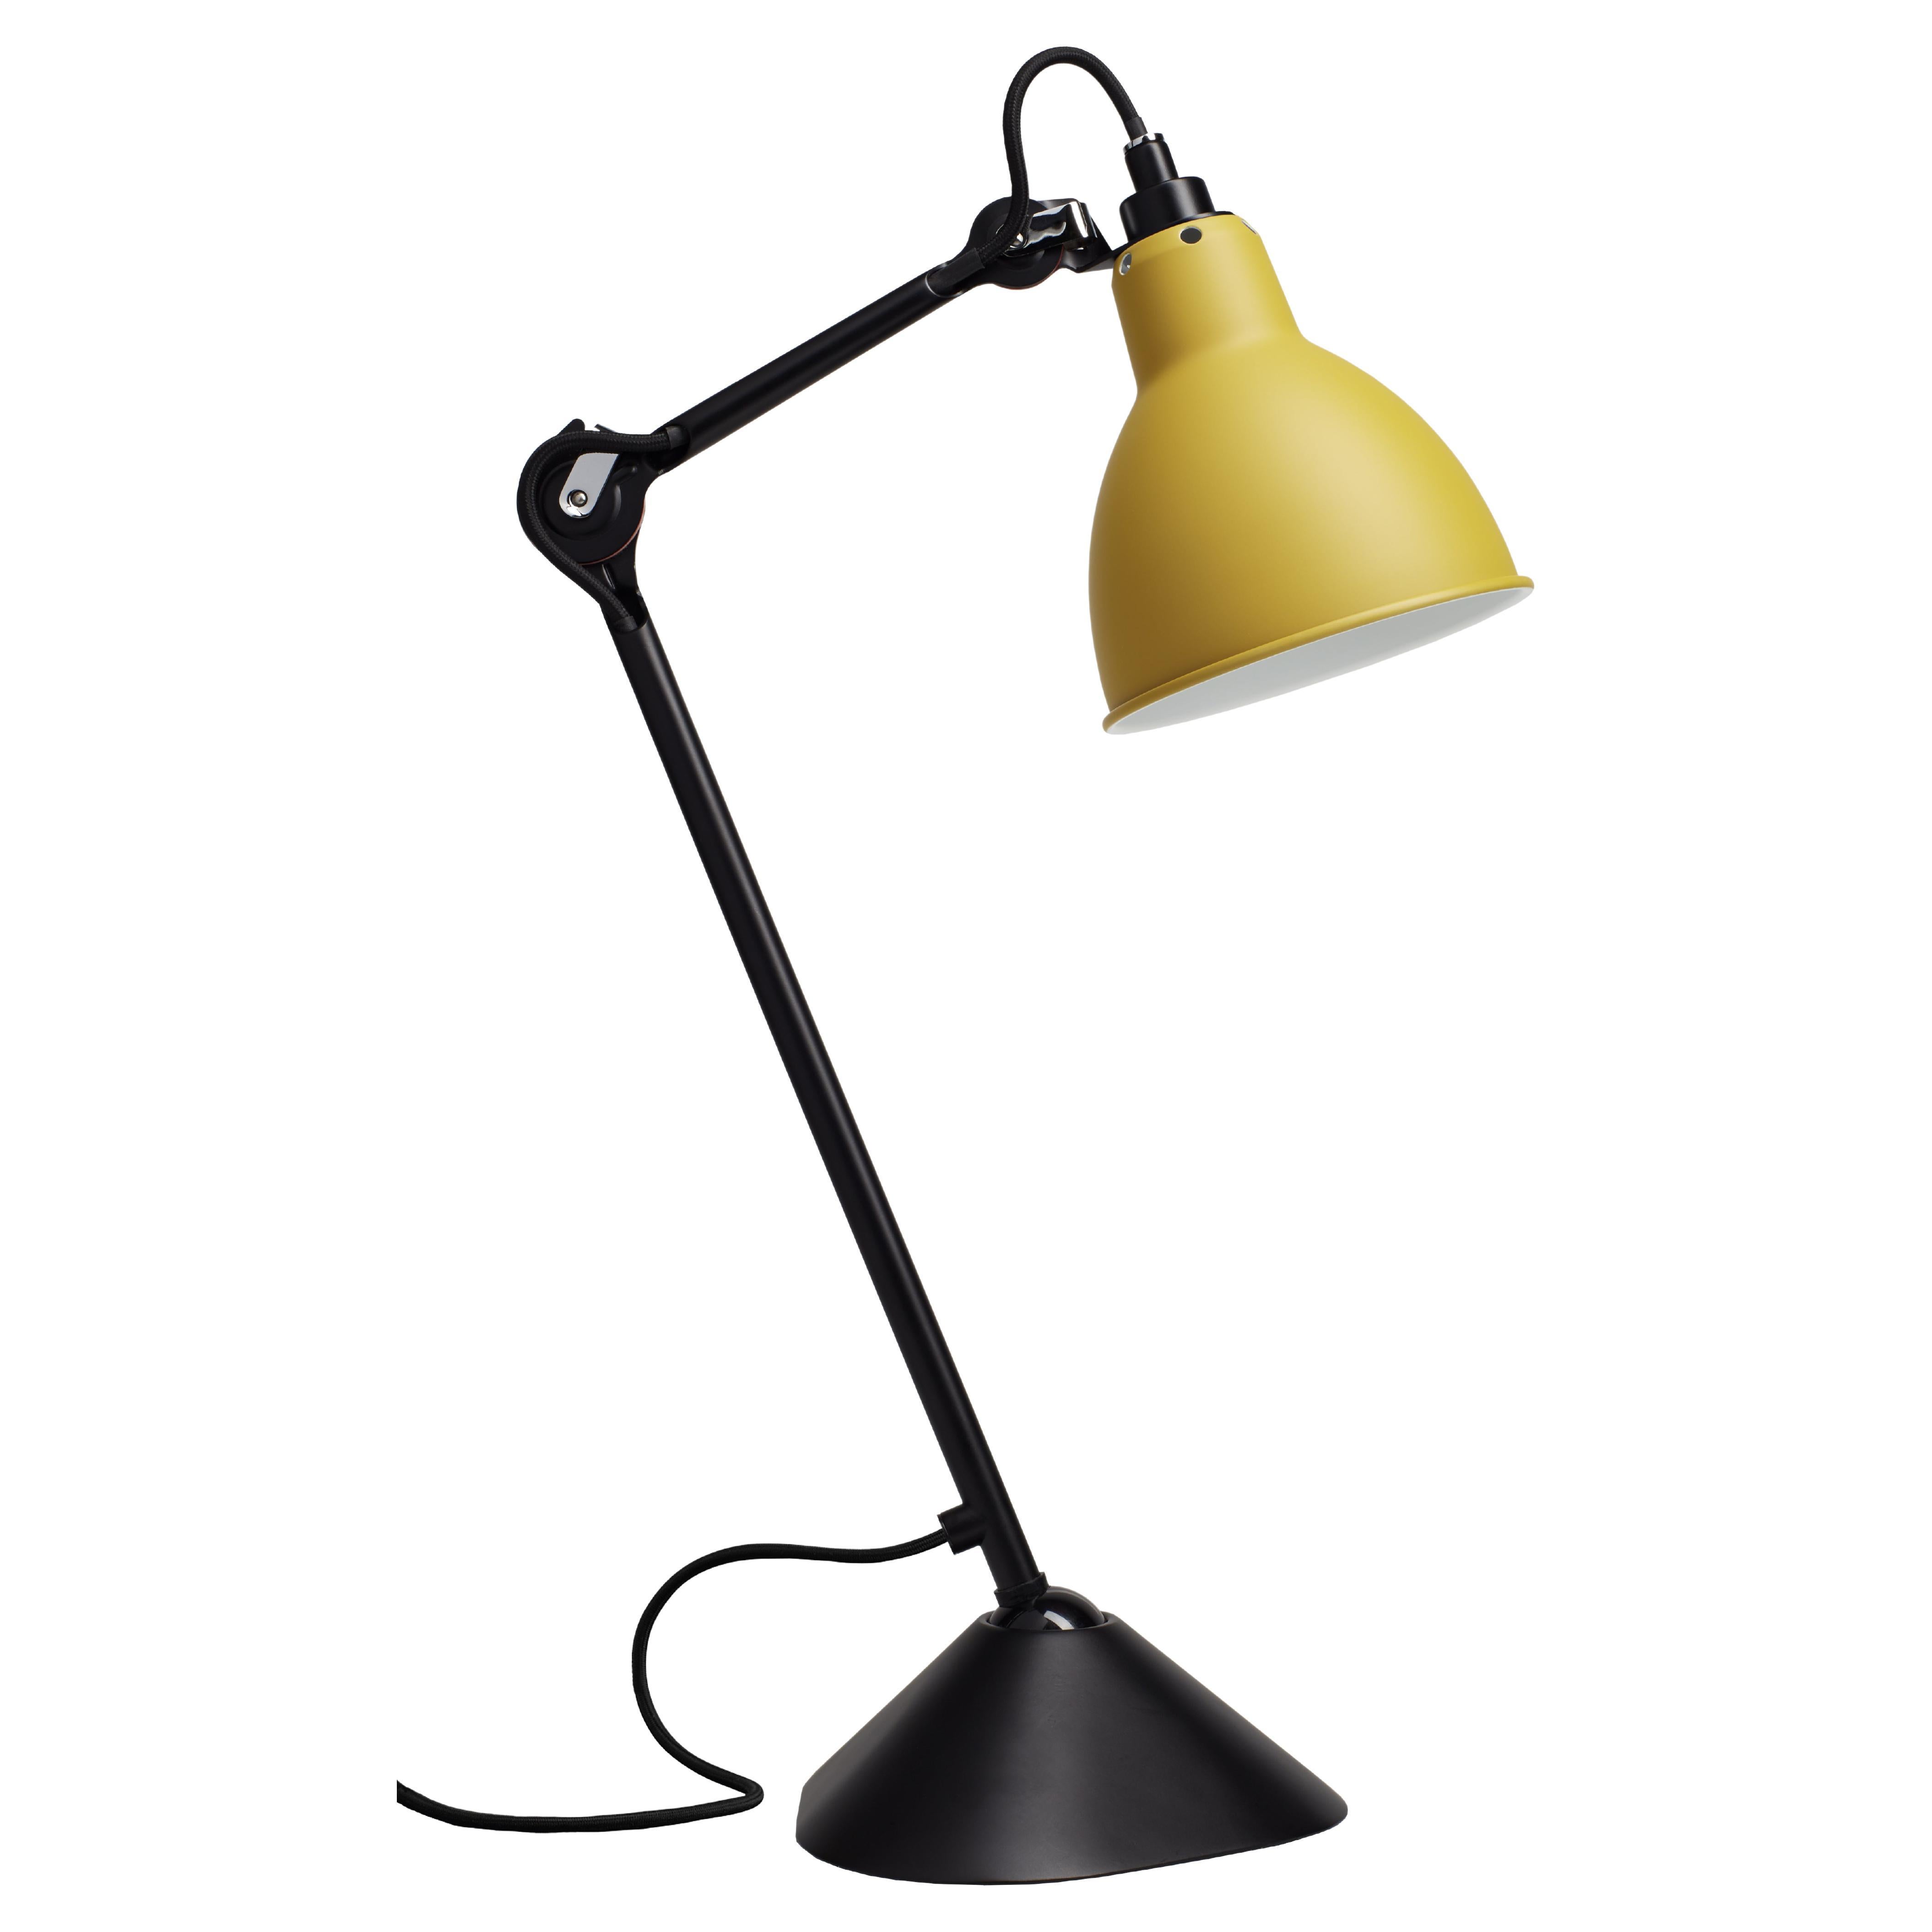 Yellow Lampe Gras N° 205 Table Lamp by Bernard-Albin Gras